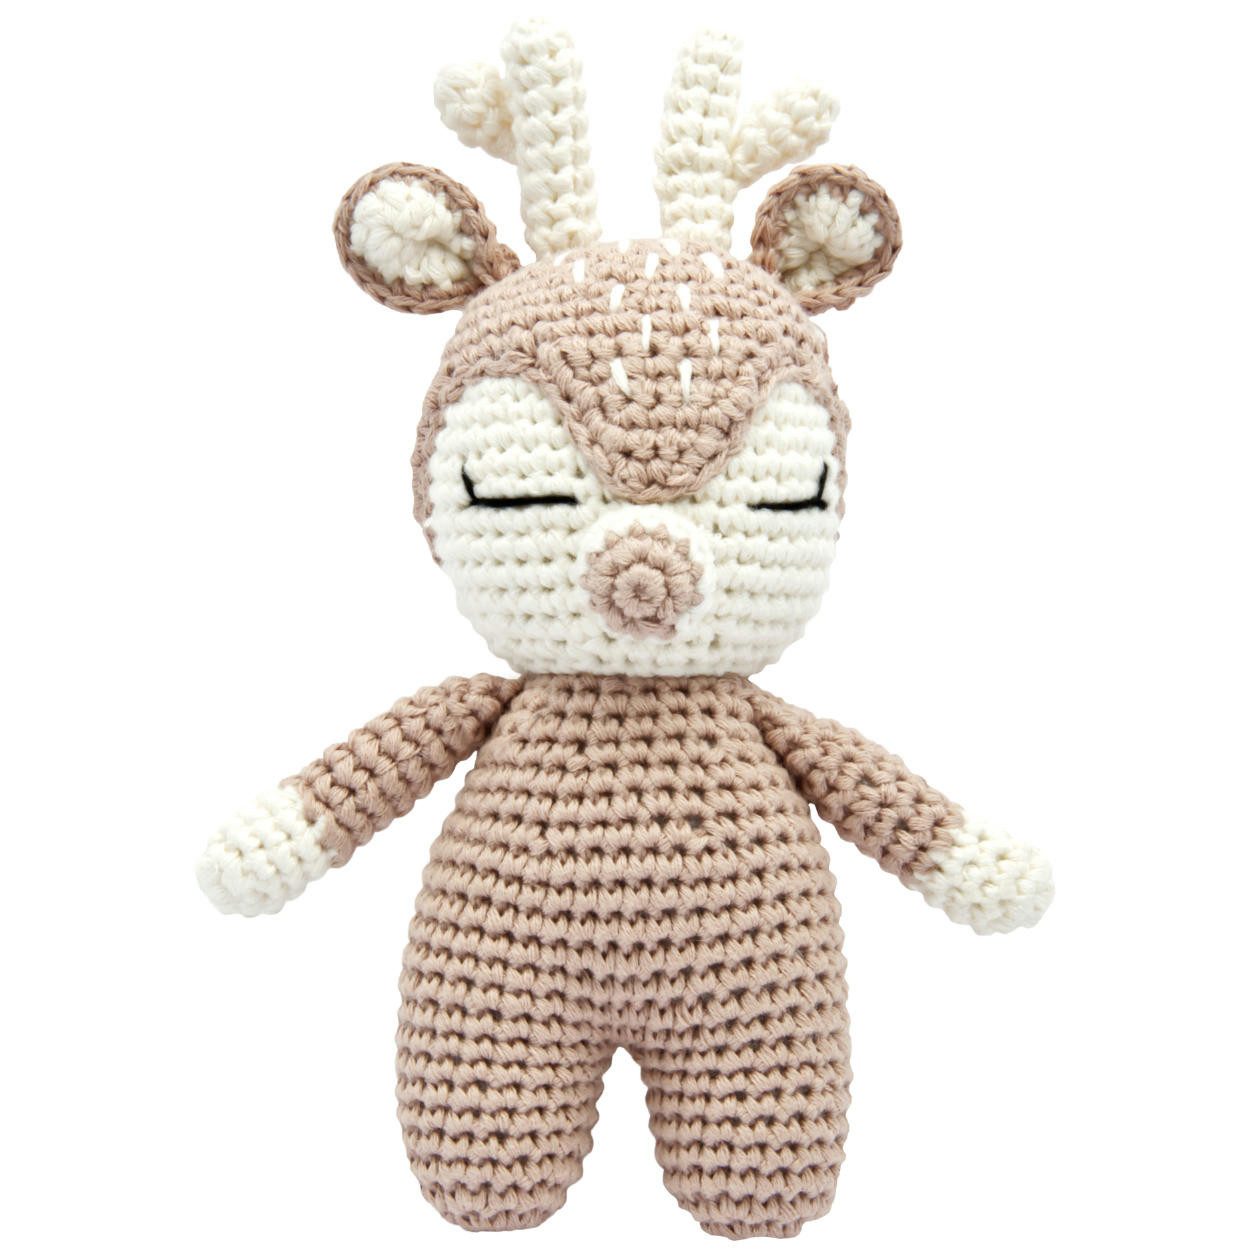 miniHeld Babypuppe Handgestrickter Hirsch/Reh gehäkelt aus Baumwolle Spielzeug 18 cm